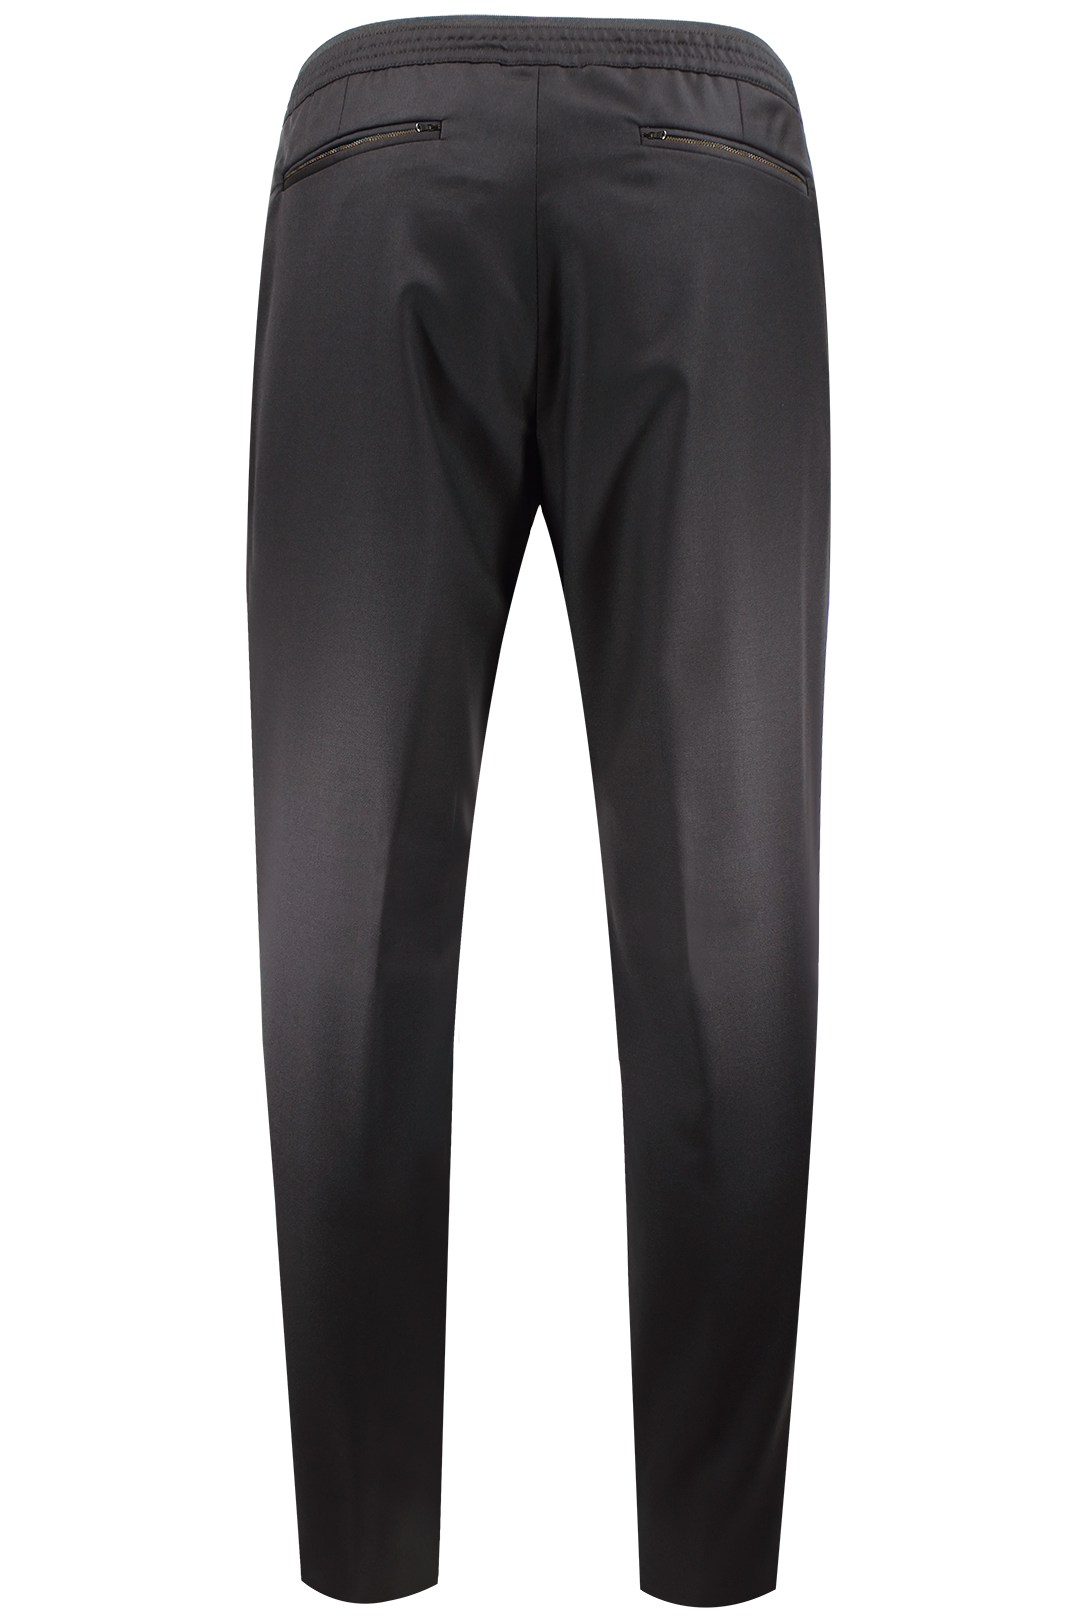 Pantalone con elastico sartoriale in lana nera retro